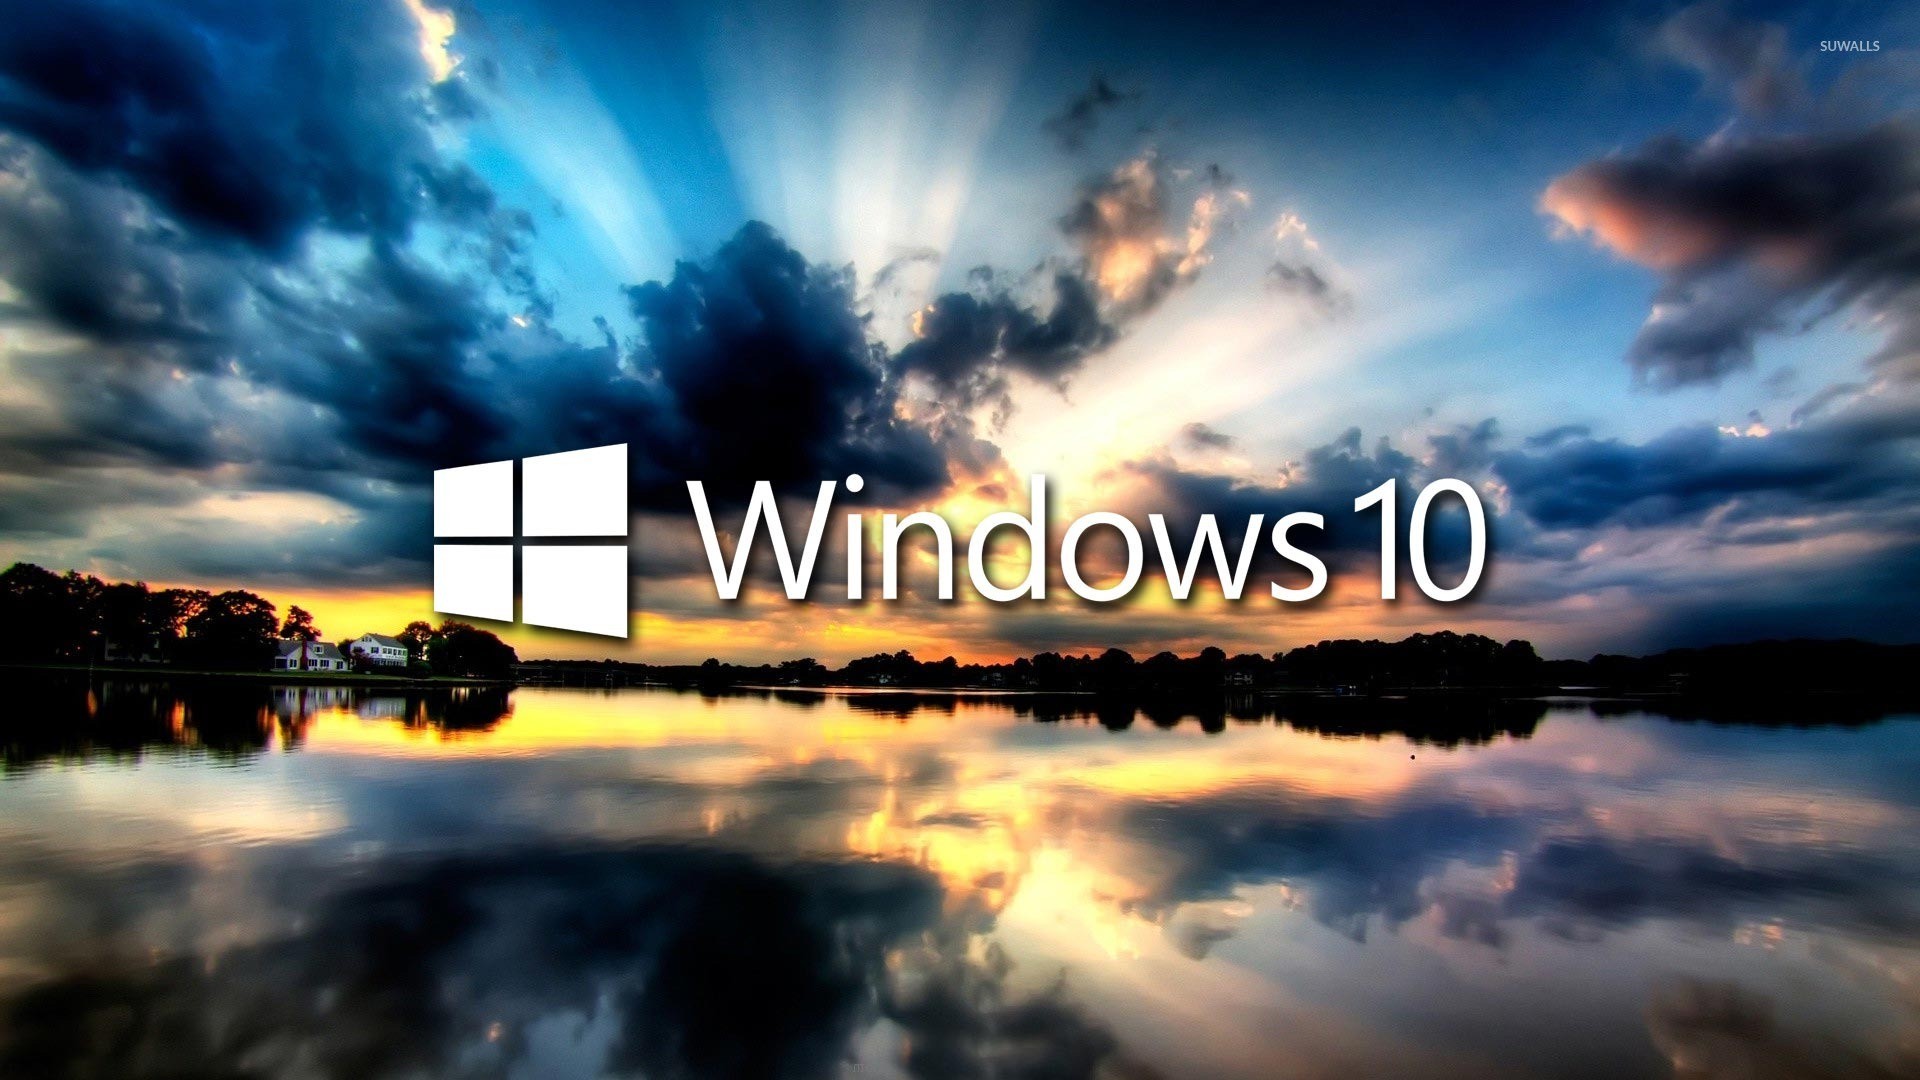 Die 94 Besten Hintergrundbilder 1920x1080 Für Windows 10 | Images and ...